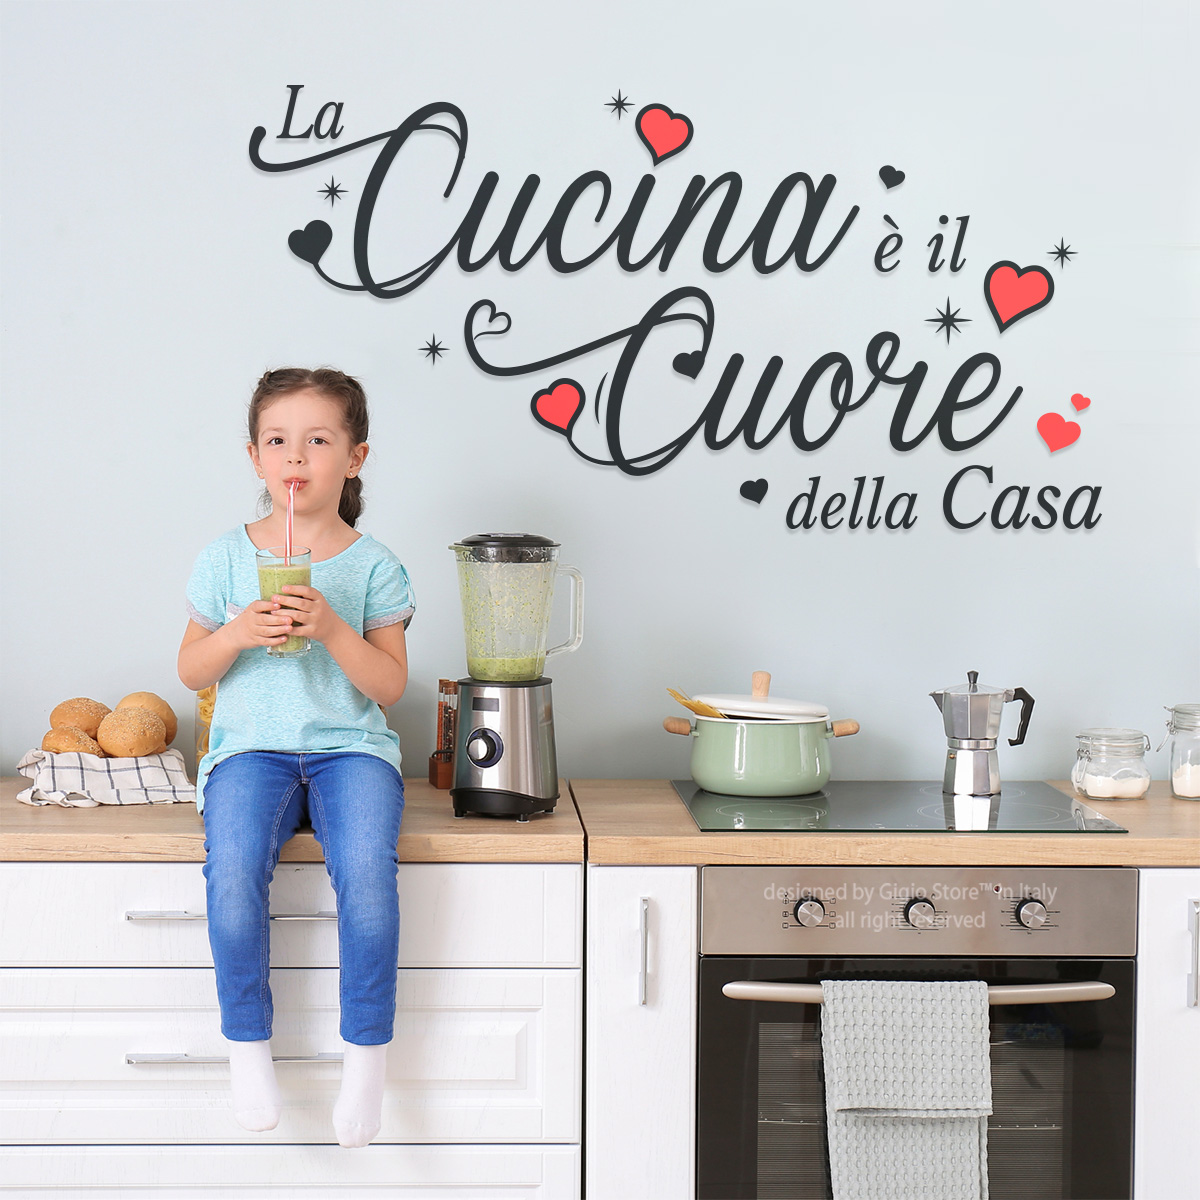 Gigio Store on X: La Cucina è il Cuore della Casa! 💓 Set con tazzine di  Caffe ☕ Adesivi Murali by Gigio Store Italia 🇮🇹 per decorare la parete  della Cucina e